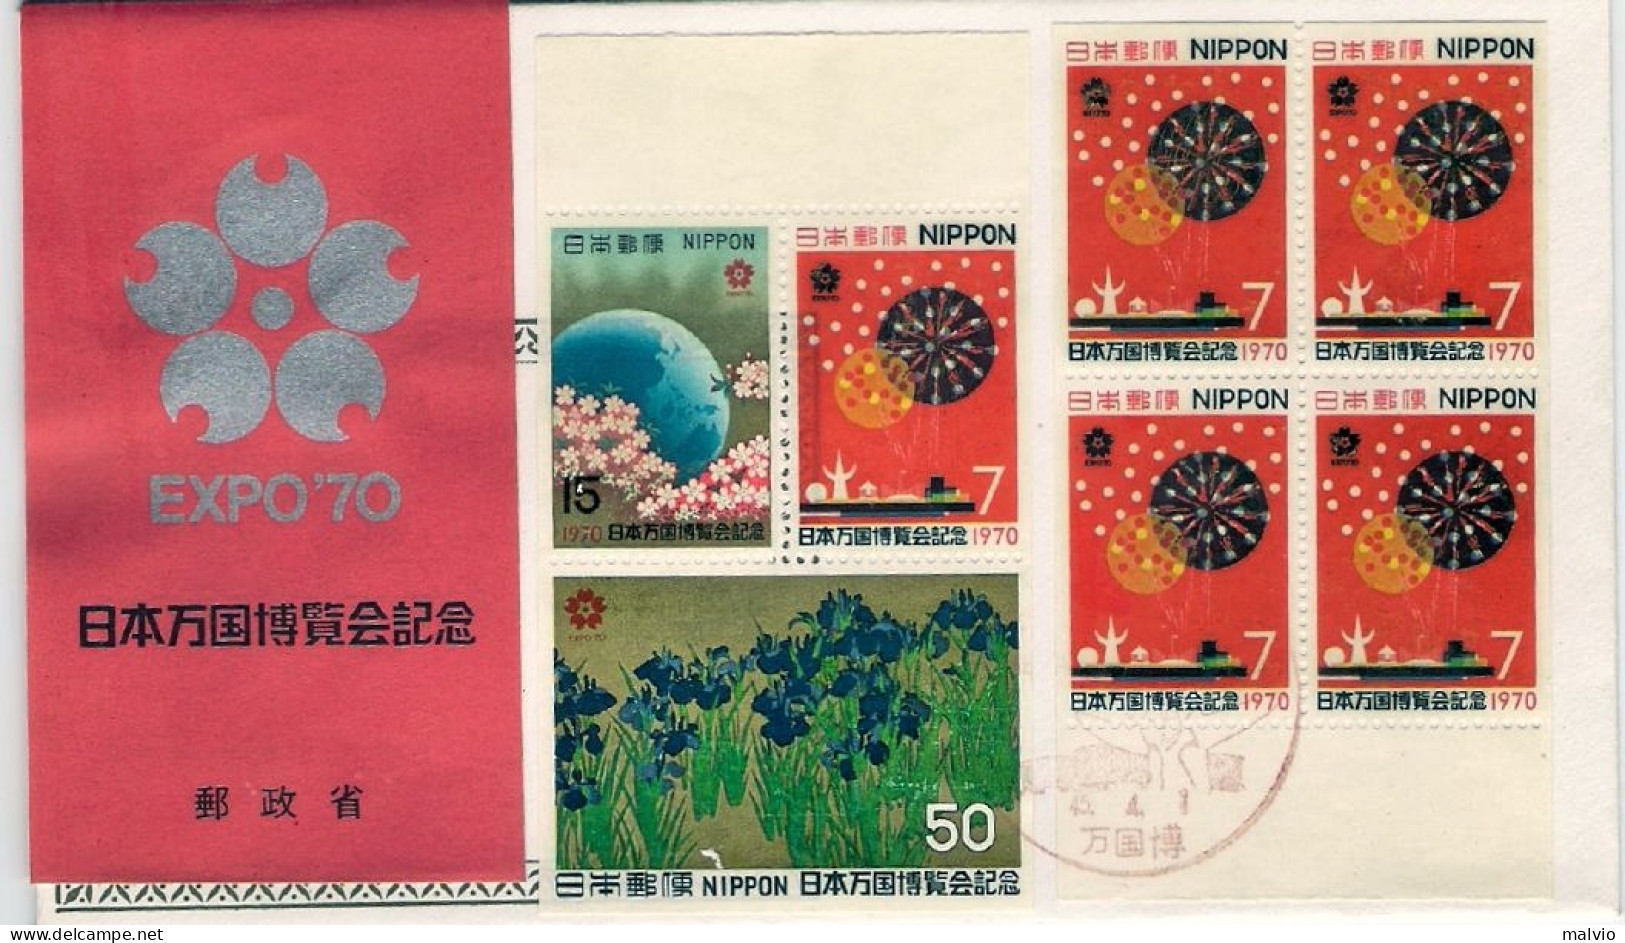 1970-Giappone Japan S.3v.+quartina 7y.macchinette "Esposizione Internazionale Di - FDC